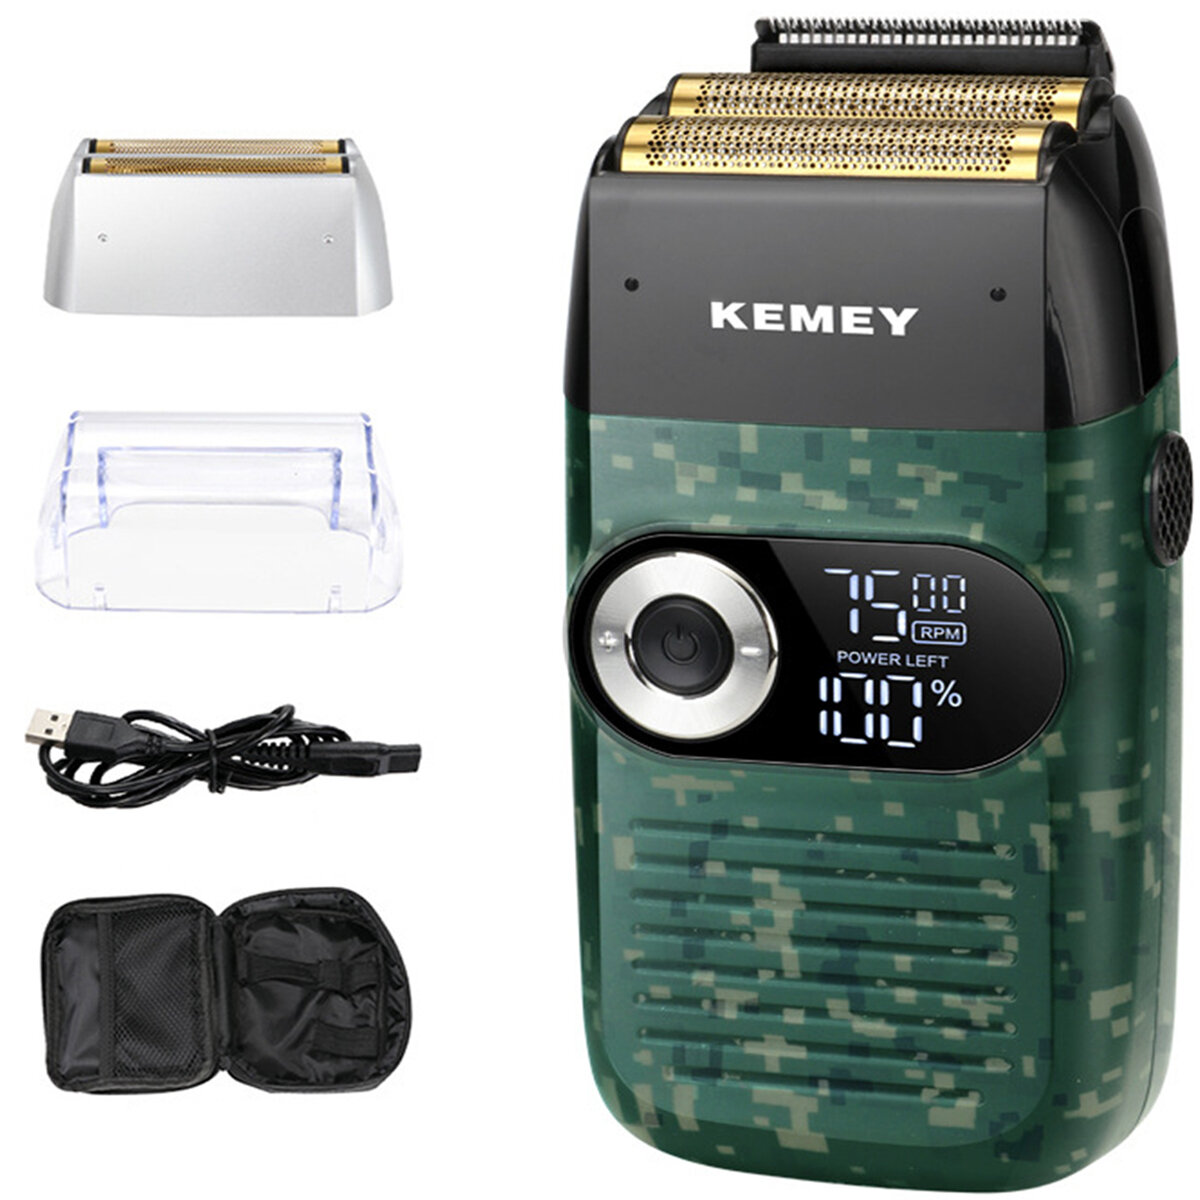 

Kemei KM-2027 Электробритва Триммер Стрижка для мужчин LCD Дисплей Бритва 2 в 1